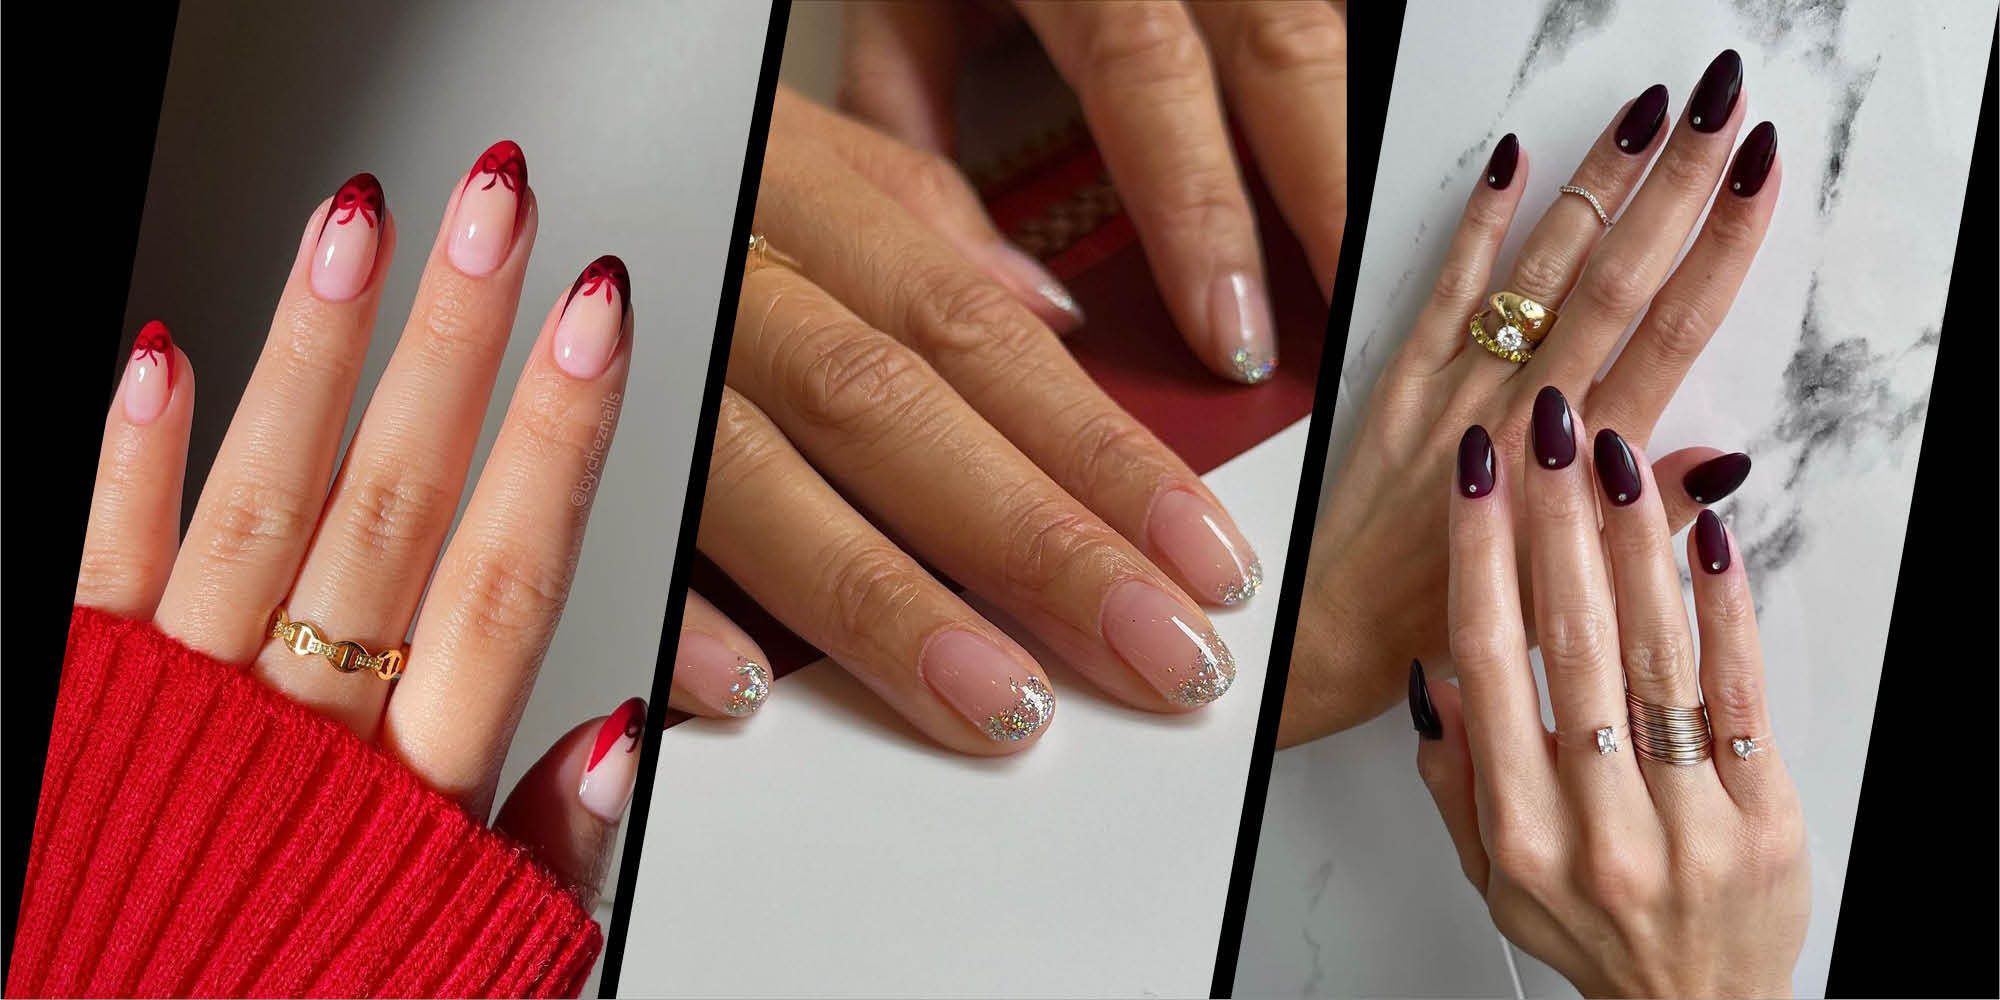 The best festive nail art ideas this Christmas | The Sun